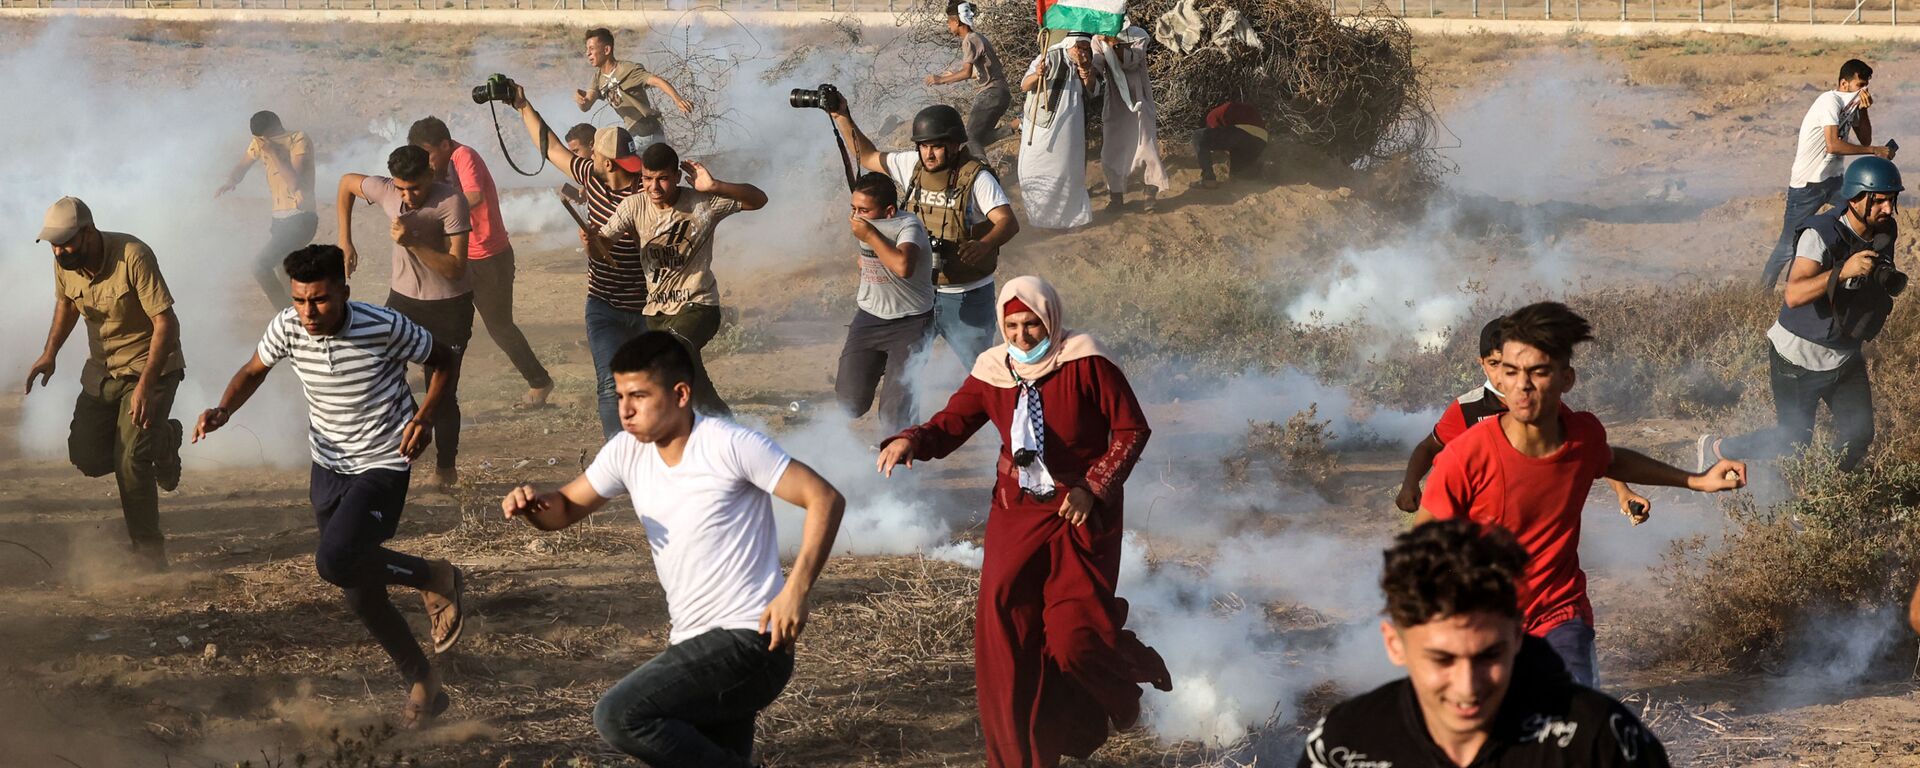 Палестинские демонстранты и журналисты бегут от слезоточивого газа во время акции протеста на юге сектора Газа - Sputnik Mundo, 1920, 13.09.2021